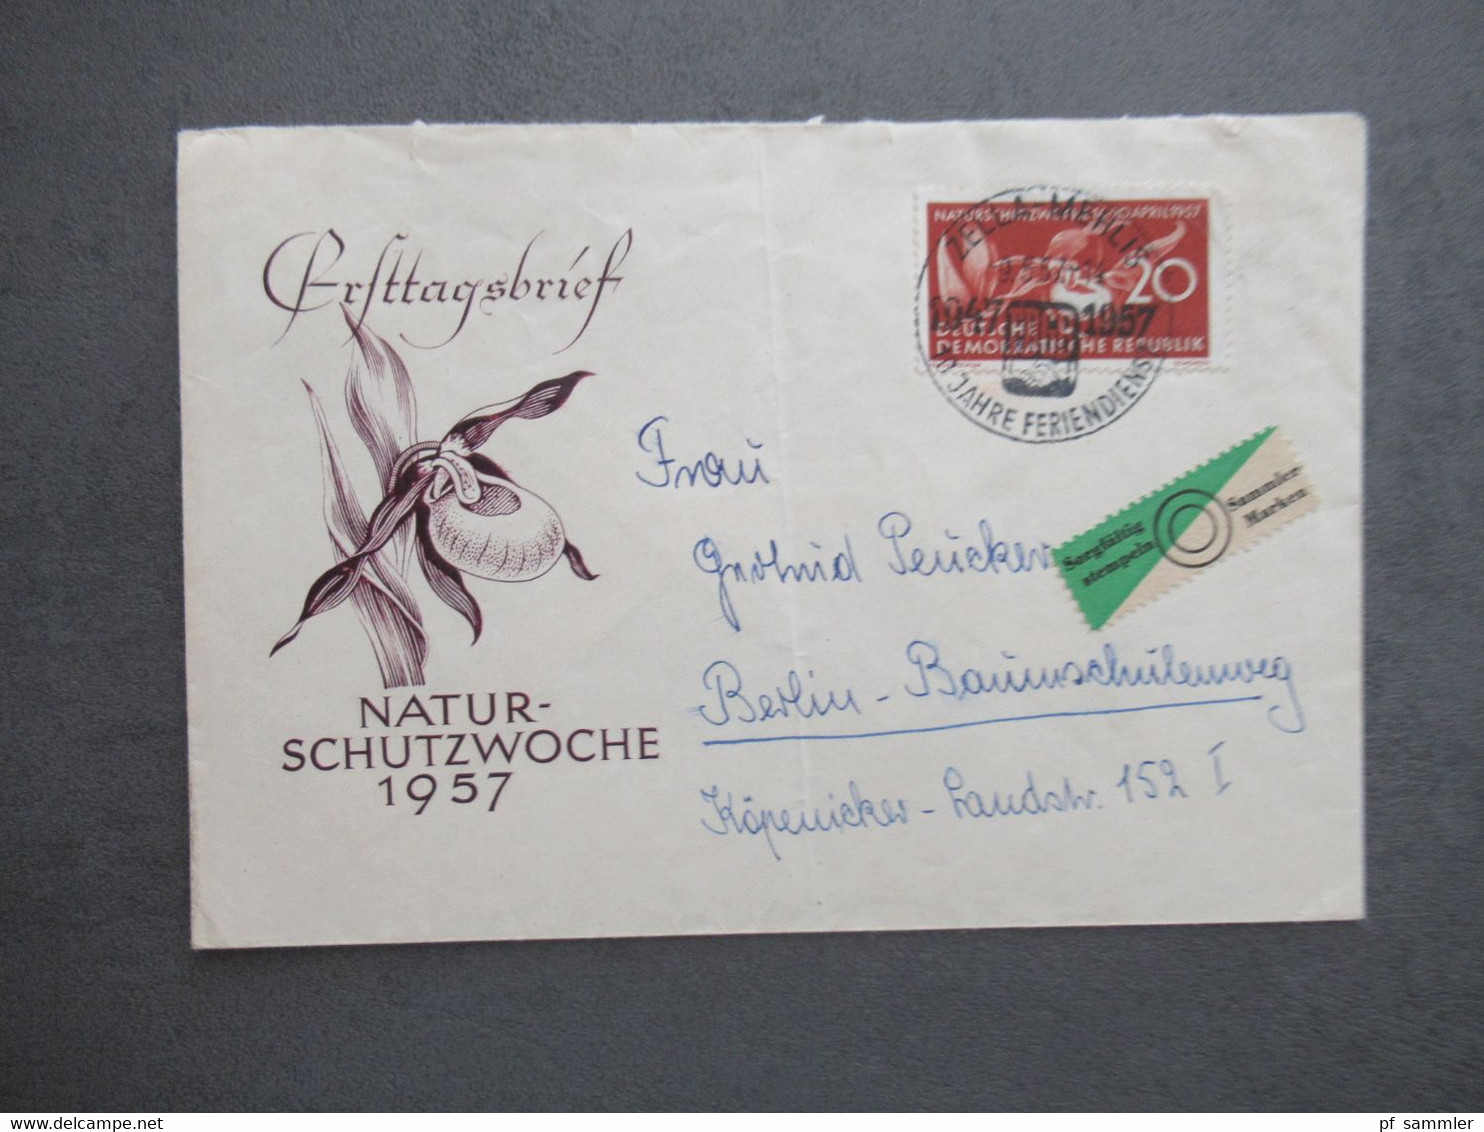 DDR ab 1954 Belegeposten mit 32 Stück Sonderbelege / Sonder PK / FDC Leipziger Messe usw. Stöberposten!